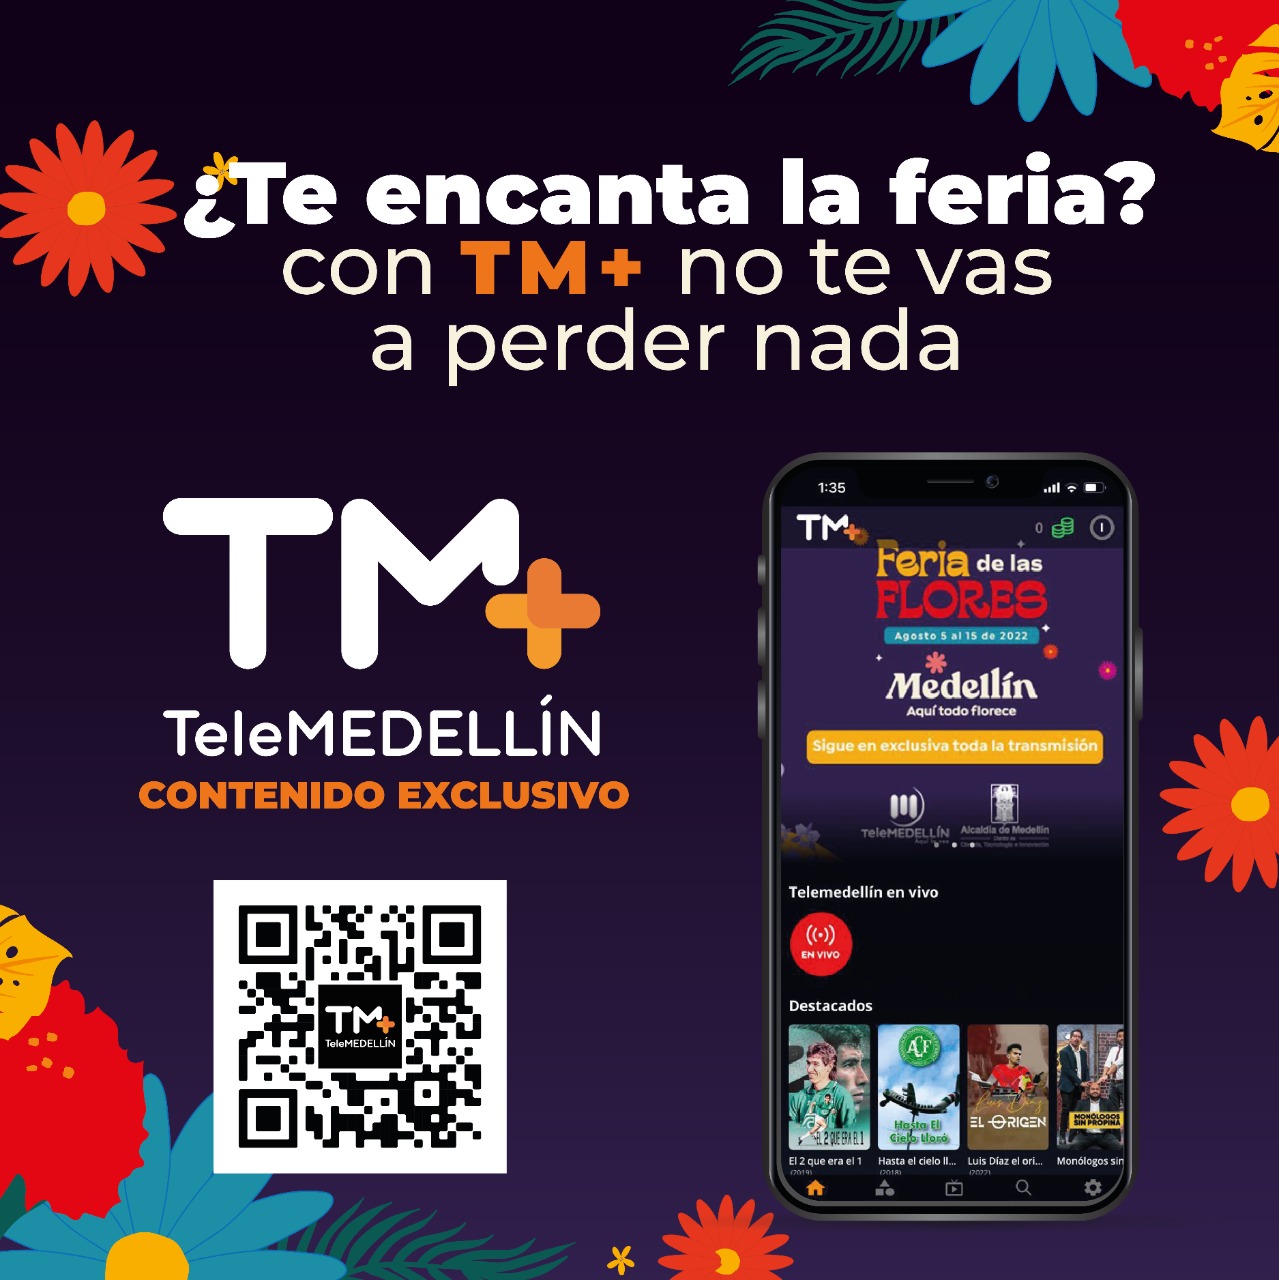 Telemedellín es el canal oficial de La Feria de las Flores 